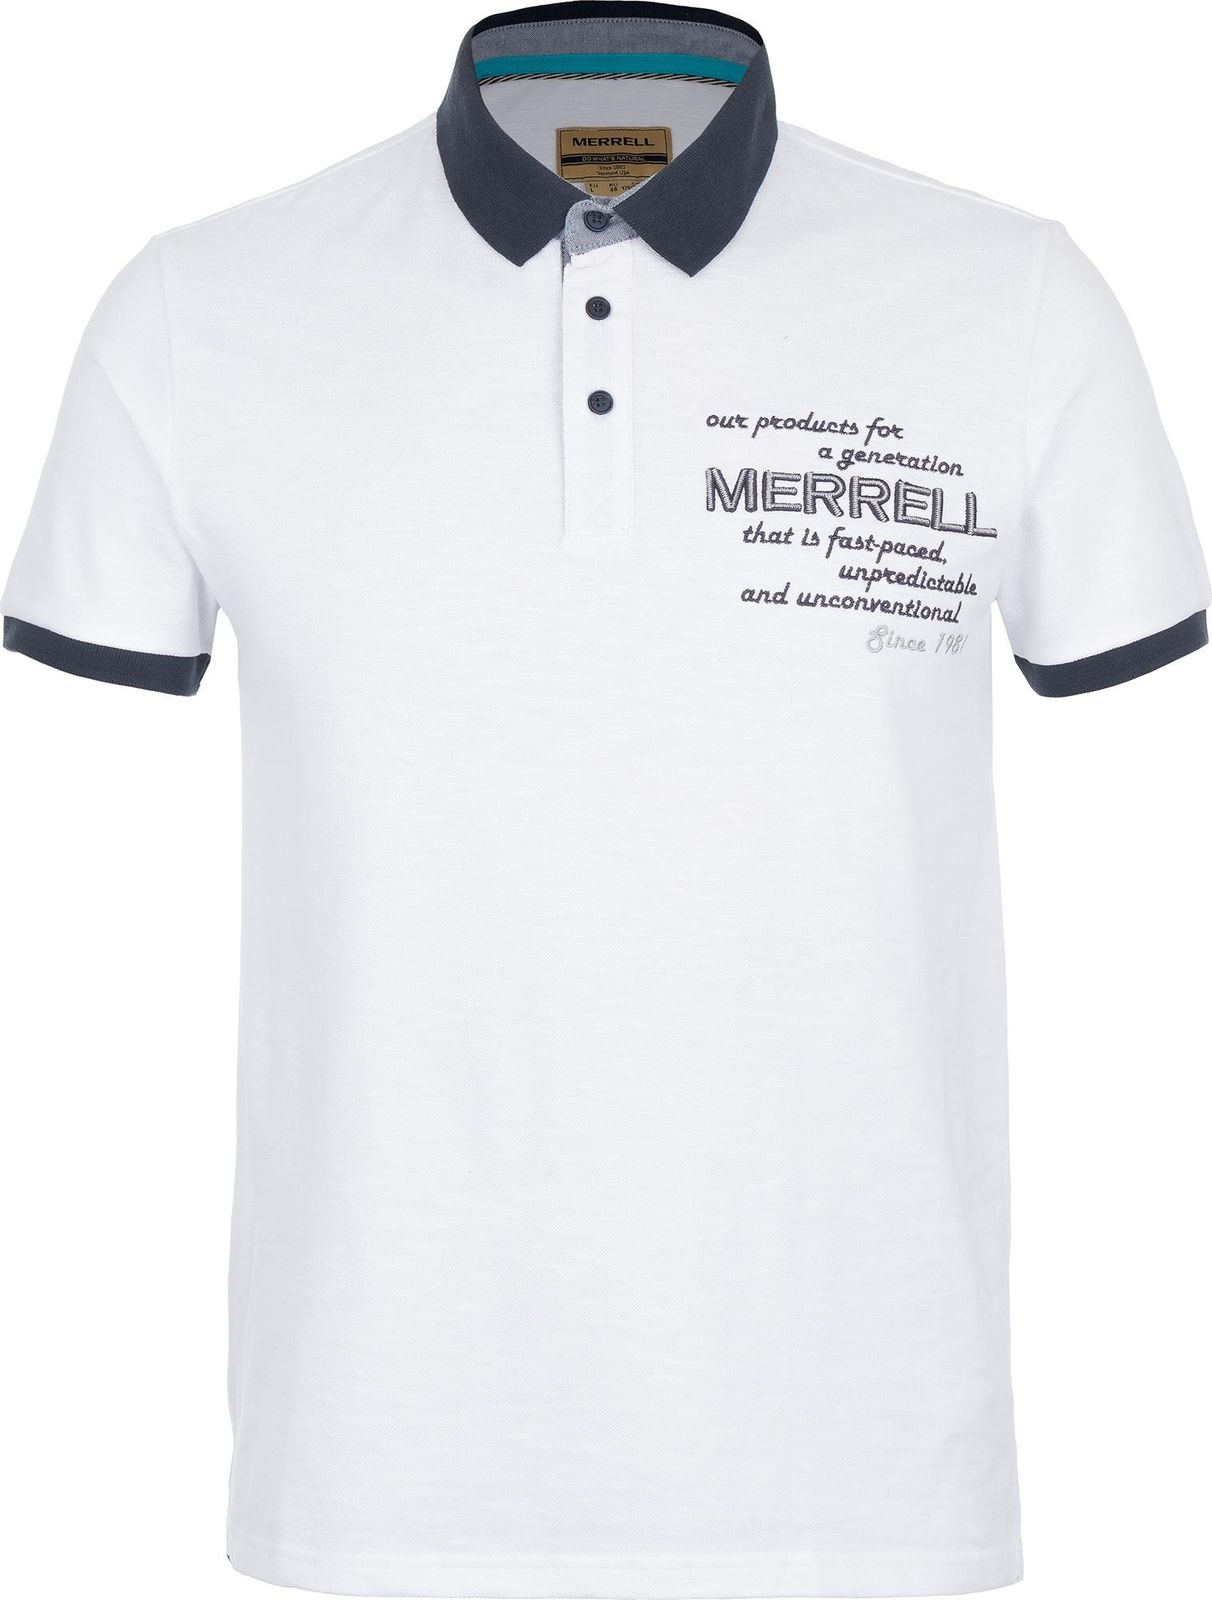   Merrell Men's Polo, : . S17AMRPOM01-00.  48